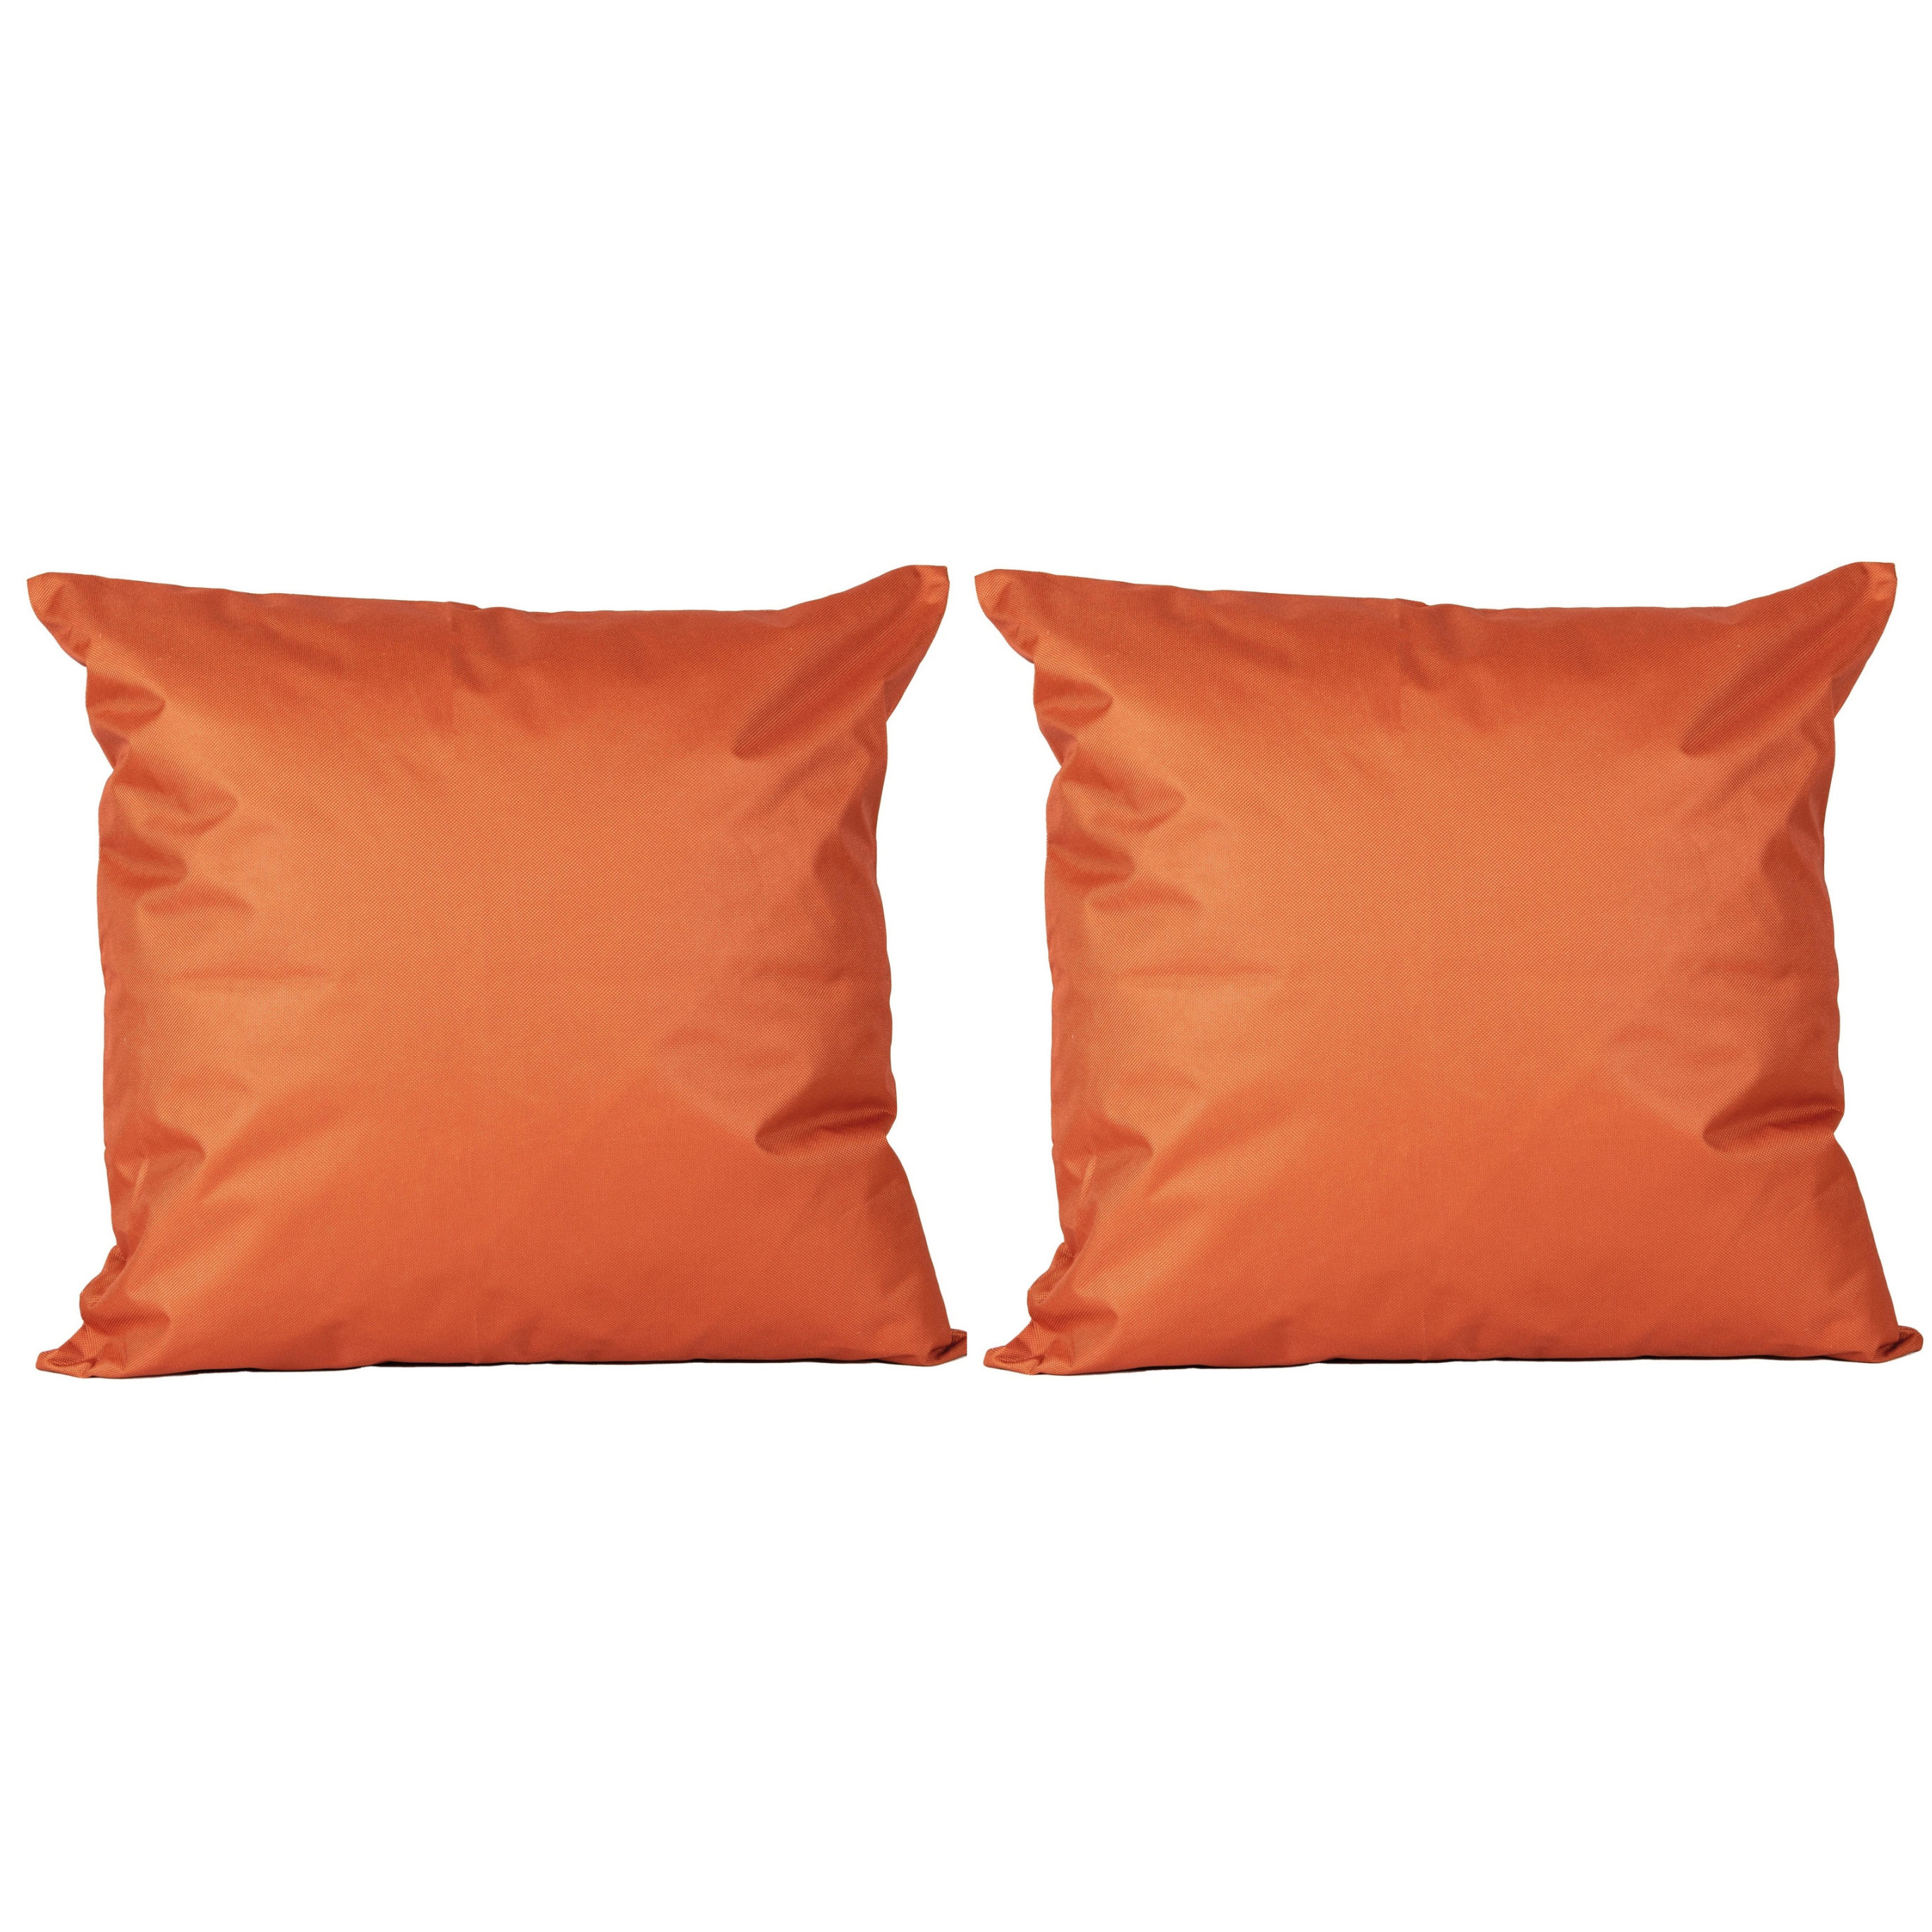 6x Bank-sier kussens voor binnen en buiten in de kleur oranje 45 x 45 cm